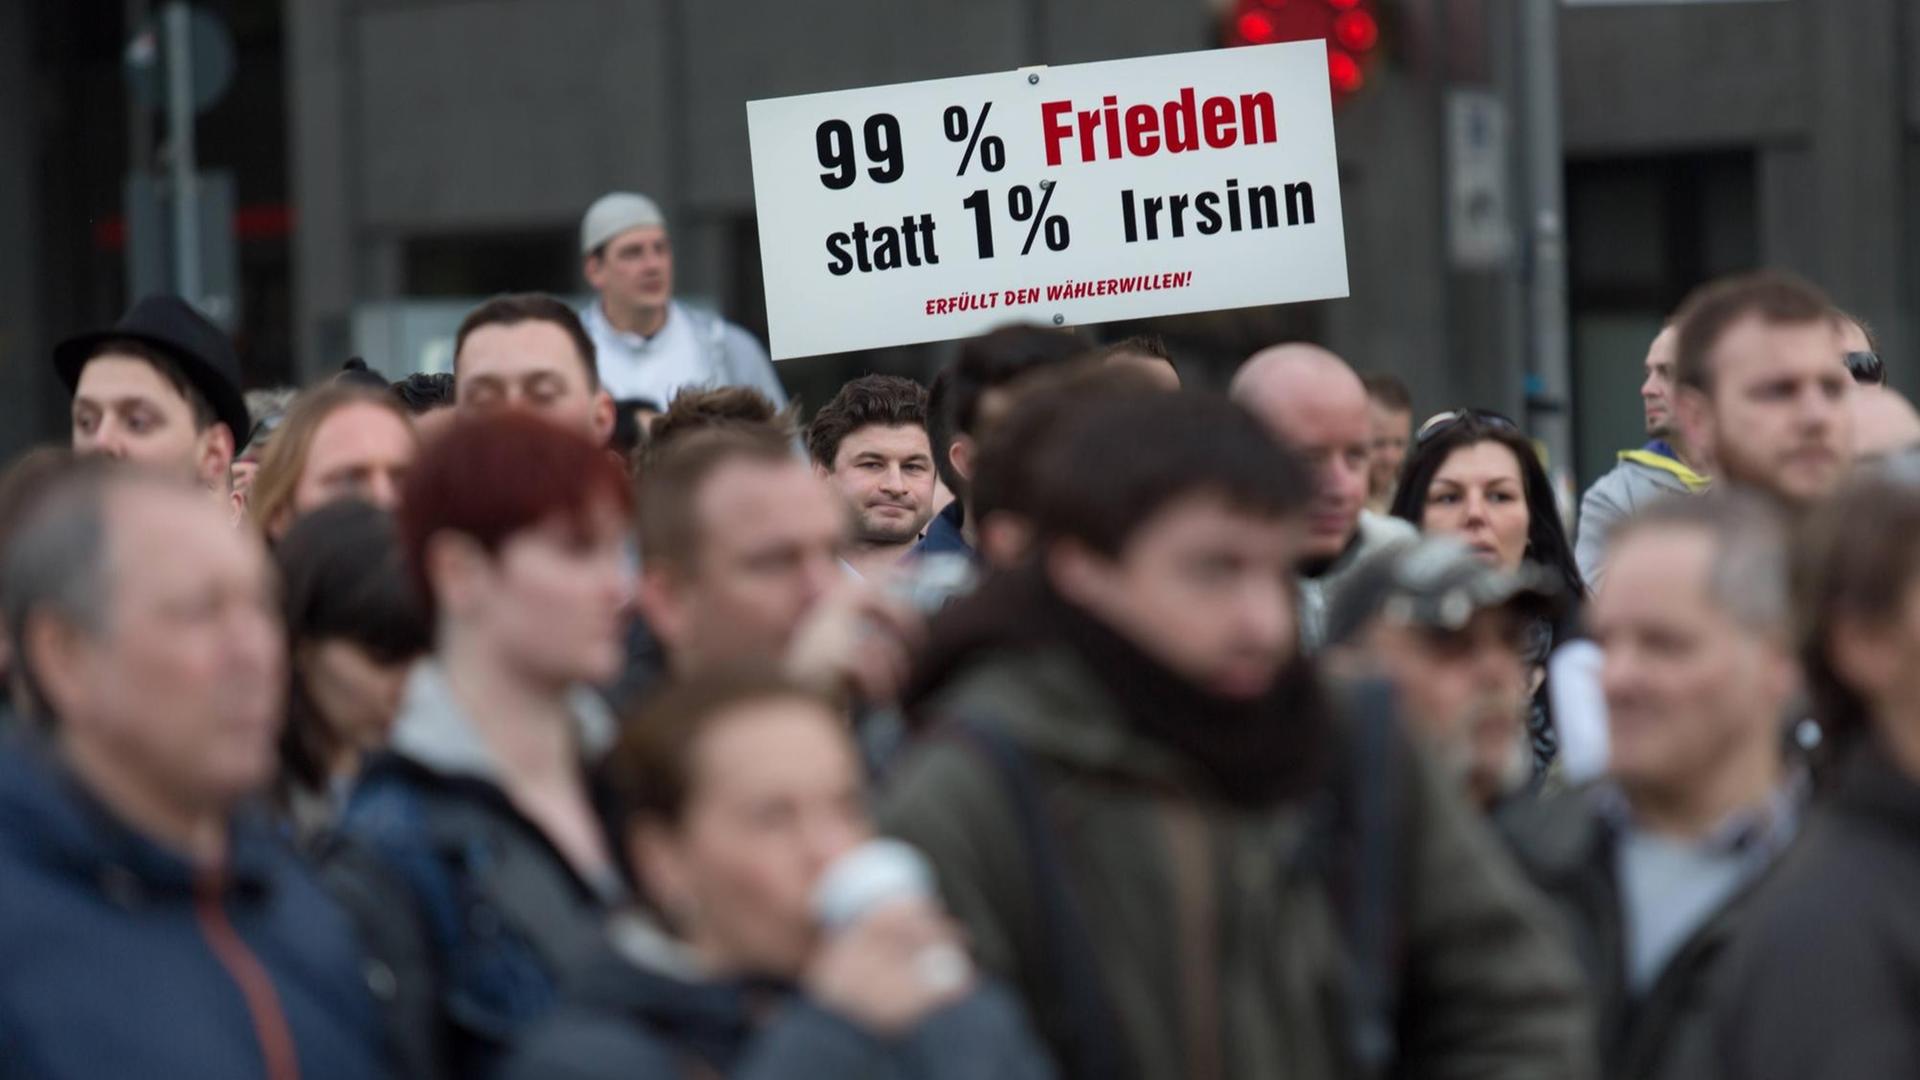 Eine Menschenmenge steht am 31.3.2014 zusammen und hält ein Schild hoch, auf dem "99% Frieden statt 1% Irrsinn - Erfüllt den Wählerwillen" geschrieben steht.